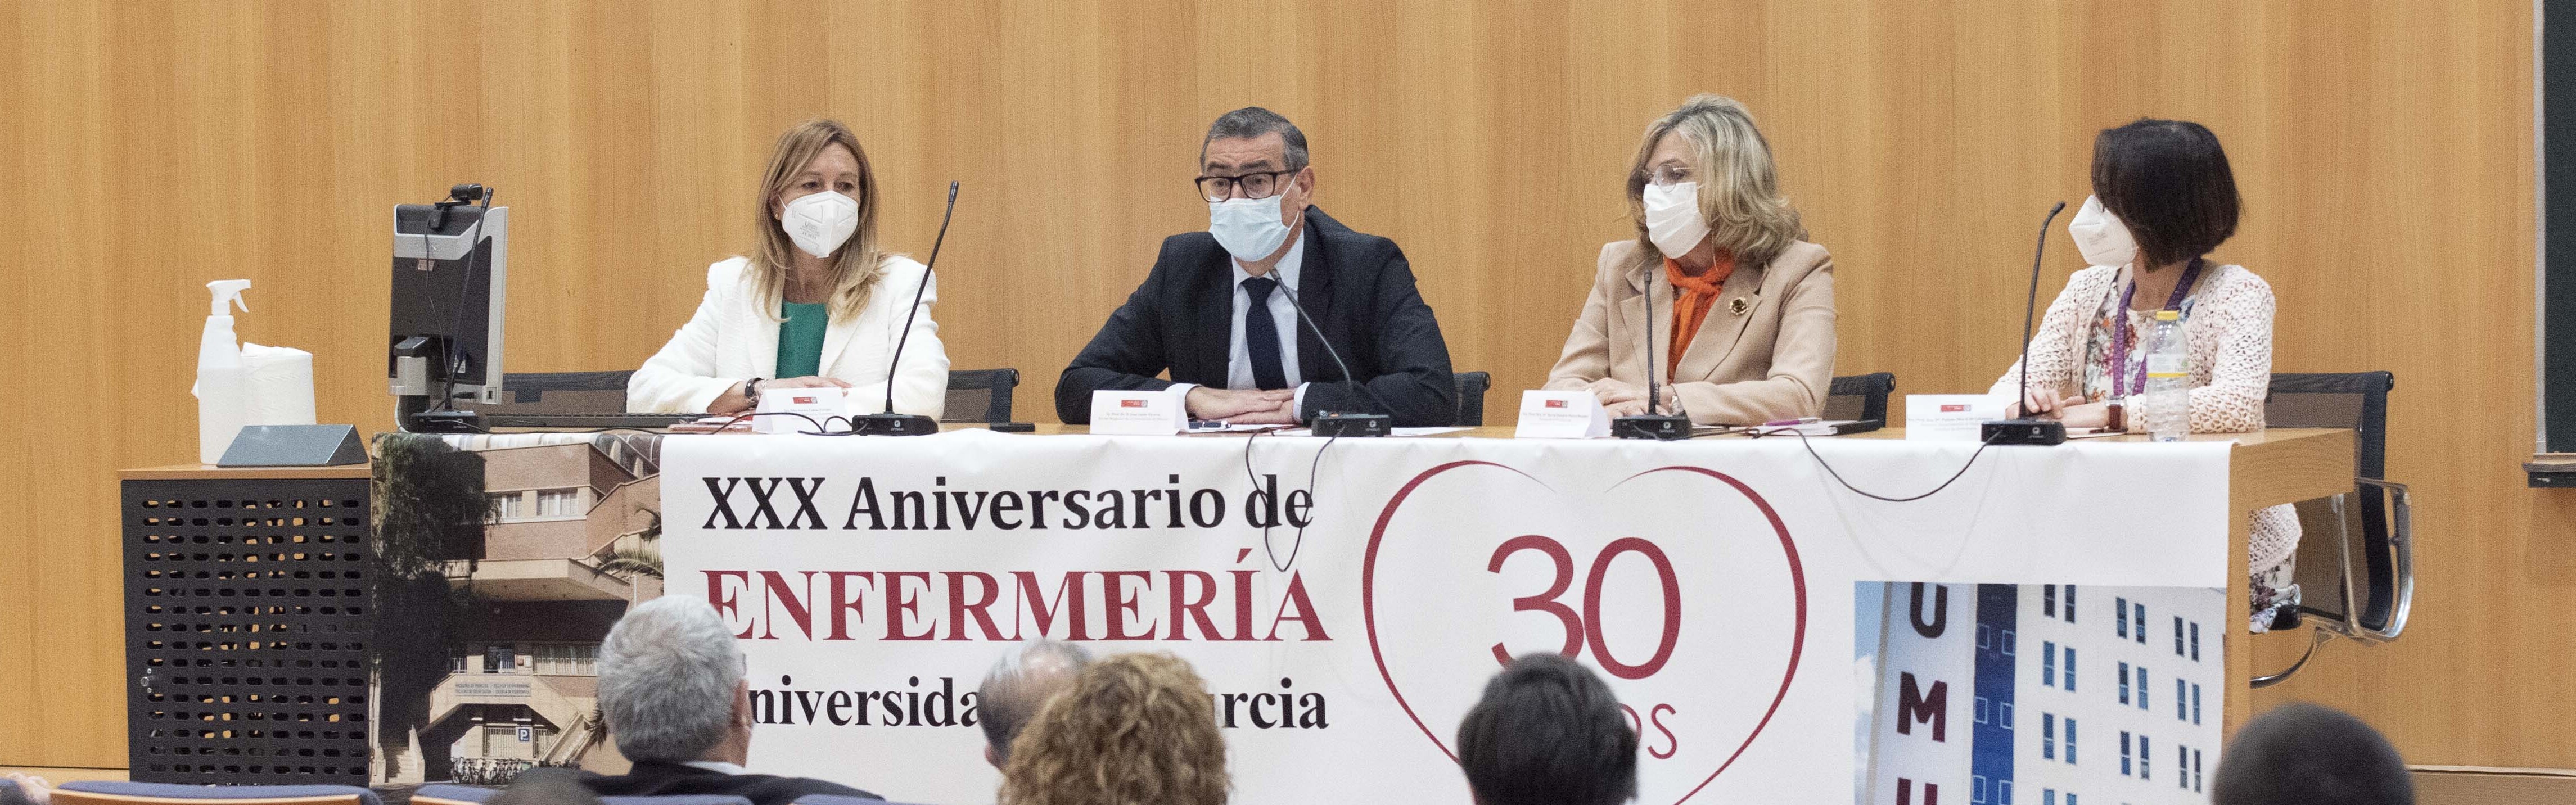 Nota de prensa - Conmemoración del 30 aniversario de la integración de los estudios de Enfermería